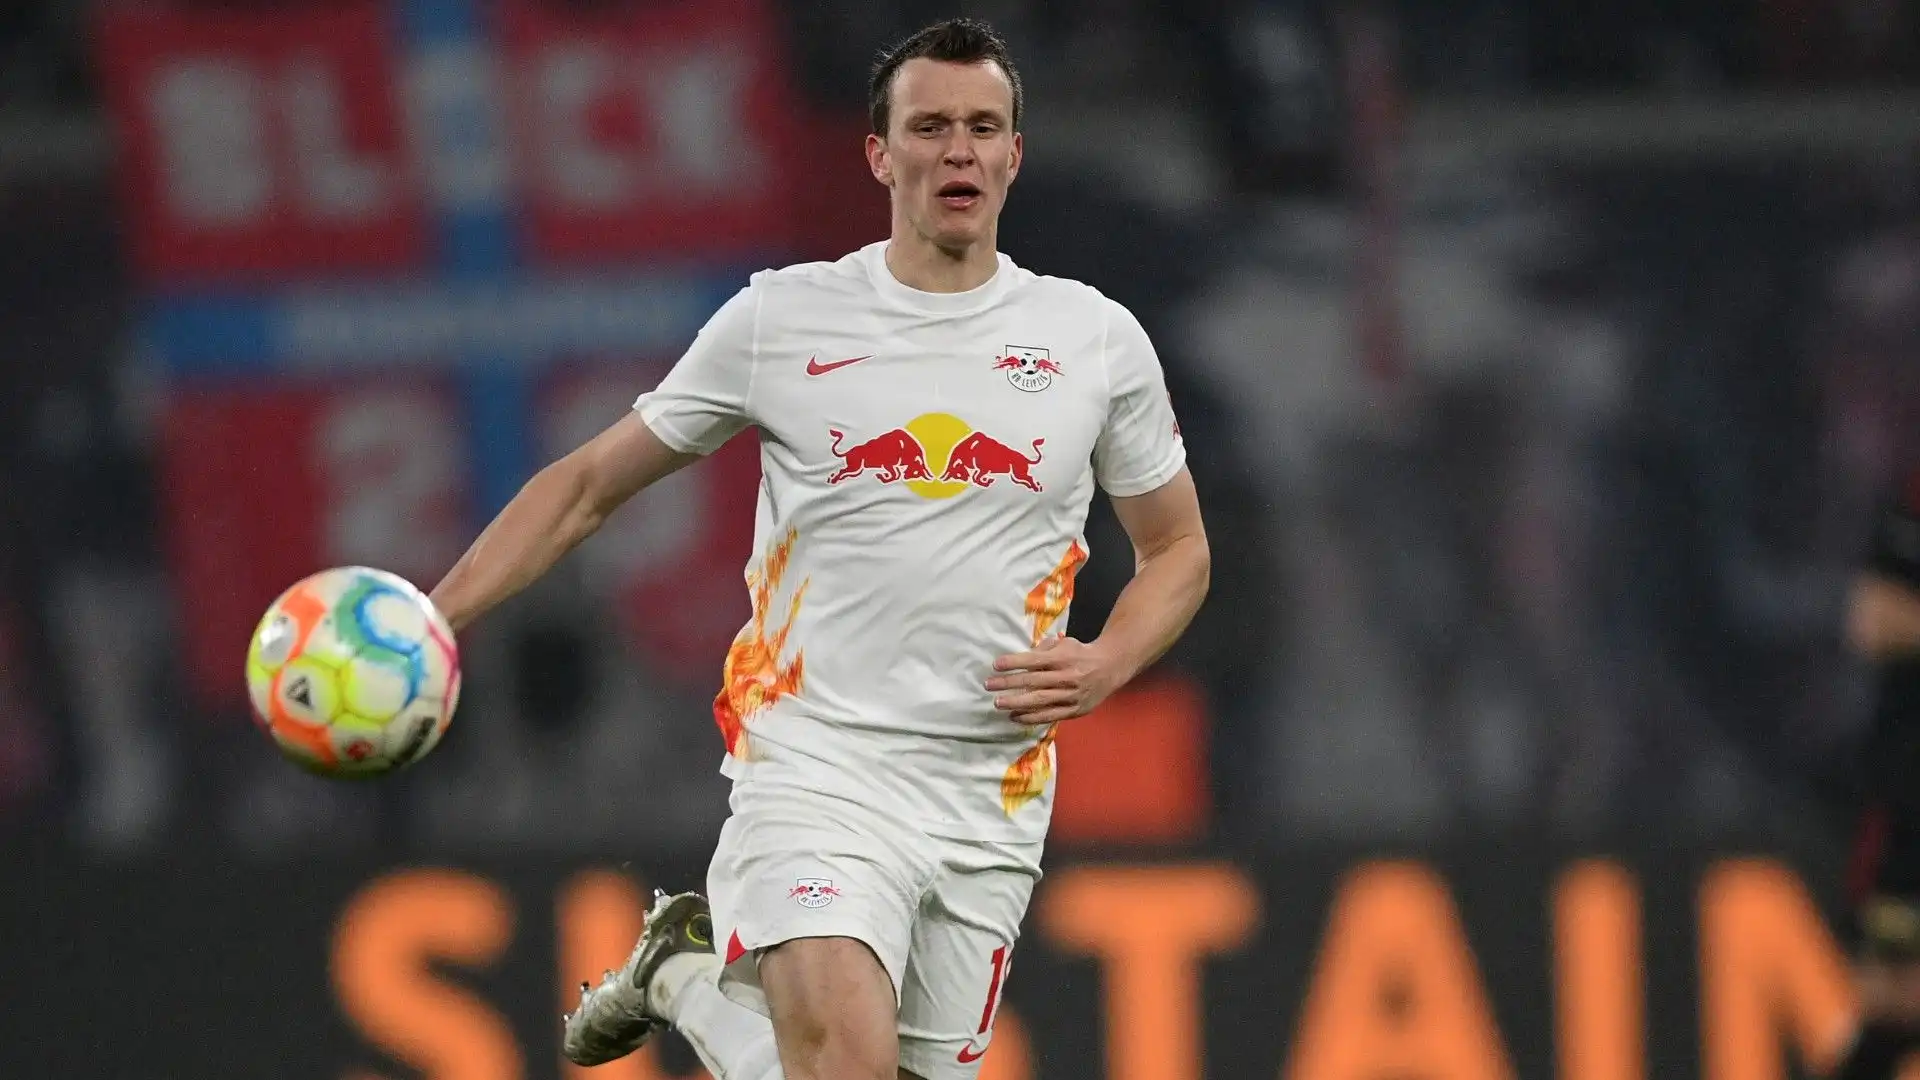 Il calciatore tedesco gioca nel Lipsia dal 2014: un'esperienza lunghissima